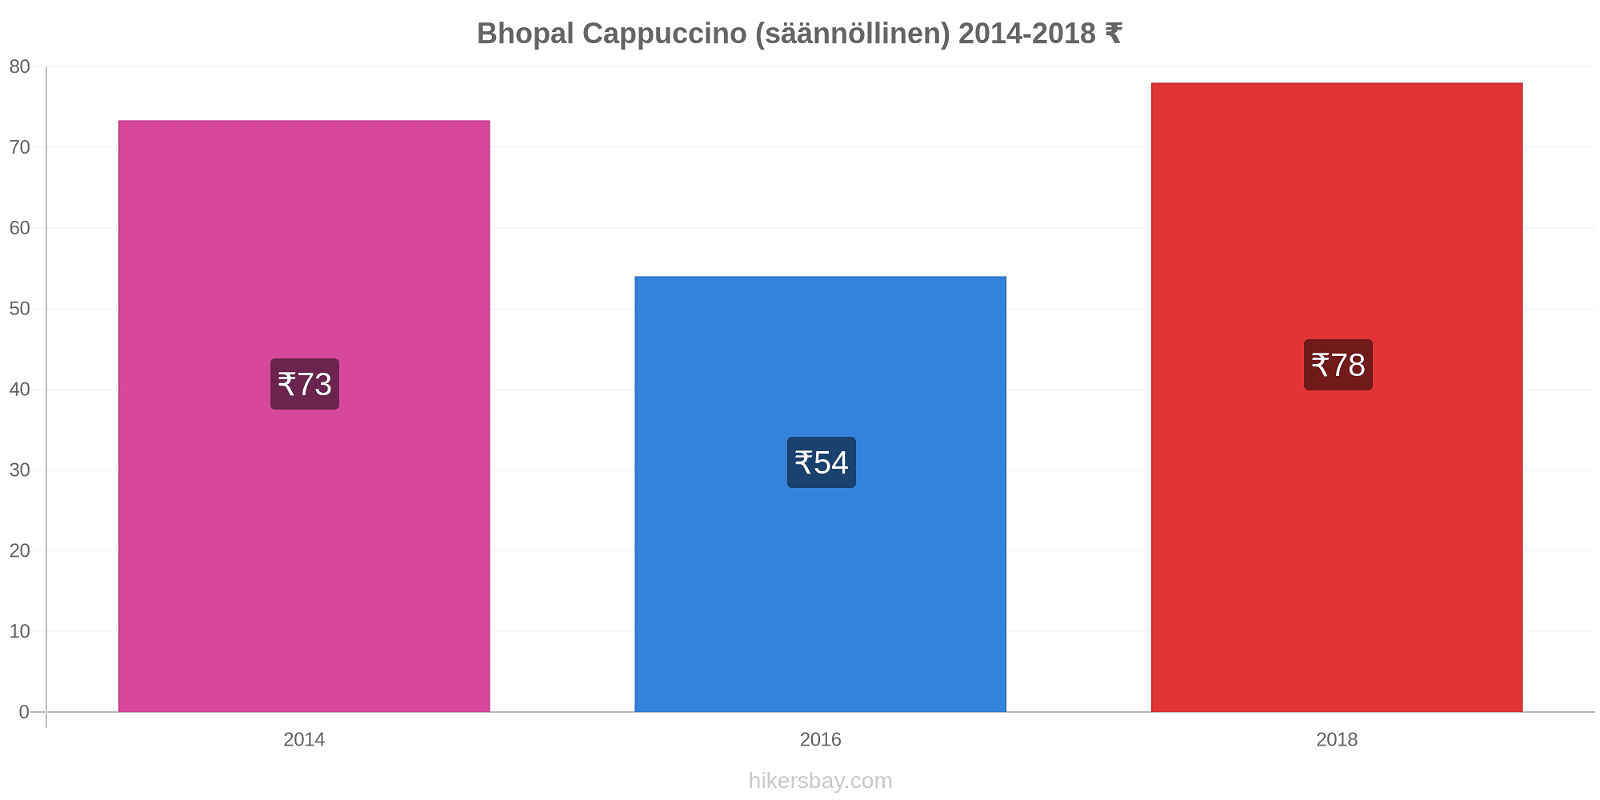 Bhopal hintojen muutokset Cappuccino (säännöllinen) hikersbay.com